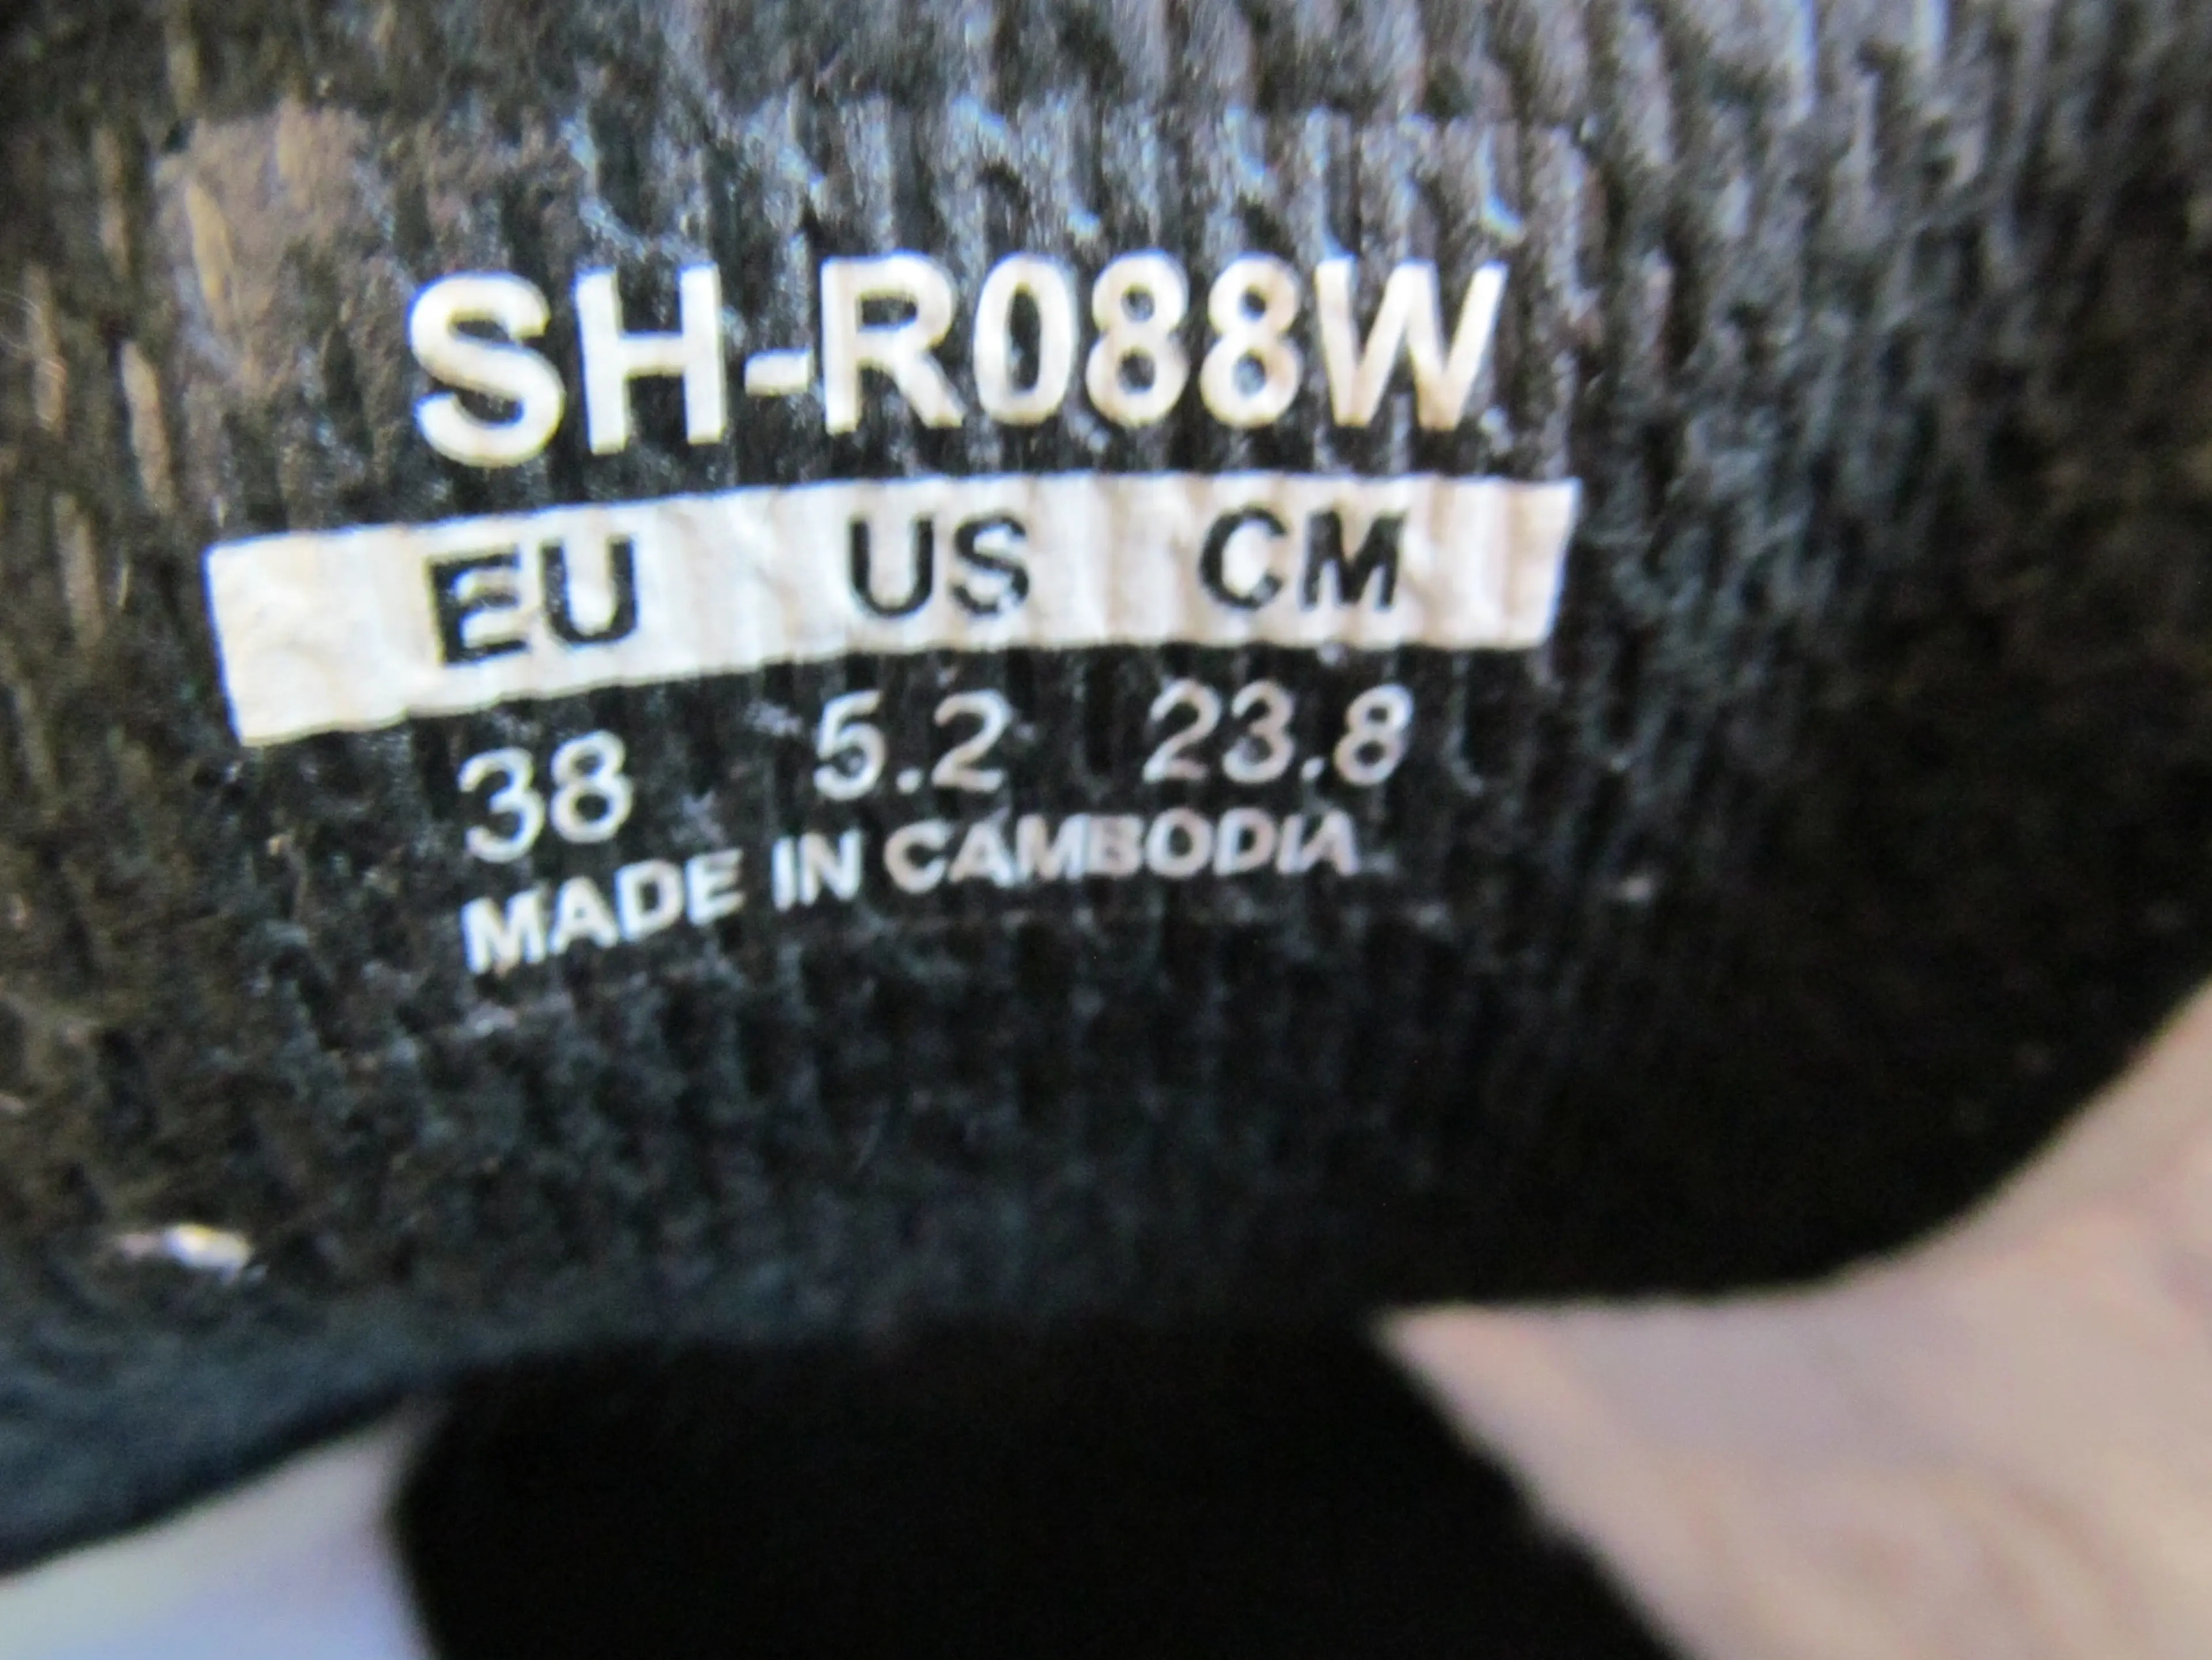 Image Pantofi Shimano SH-R088W nr 38 , 23.8 cm